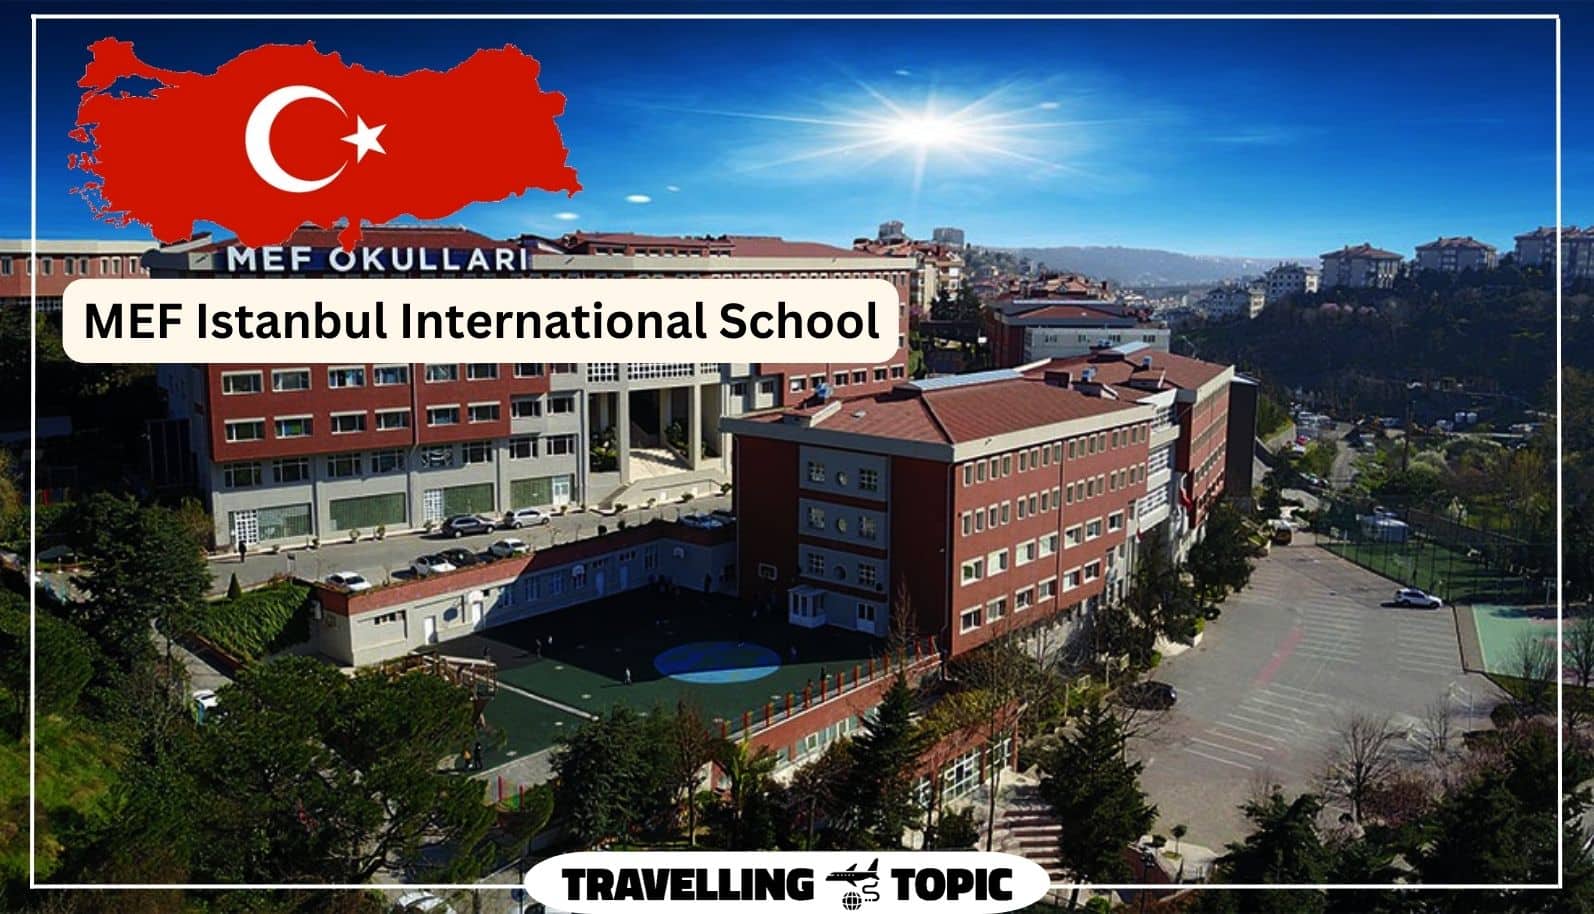 MEF Istanbul International School